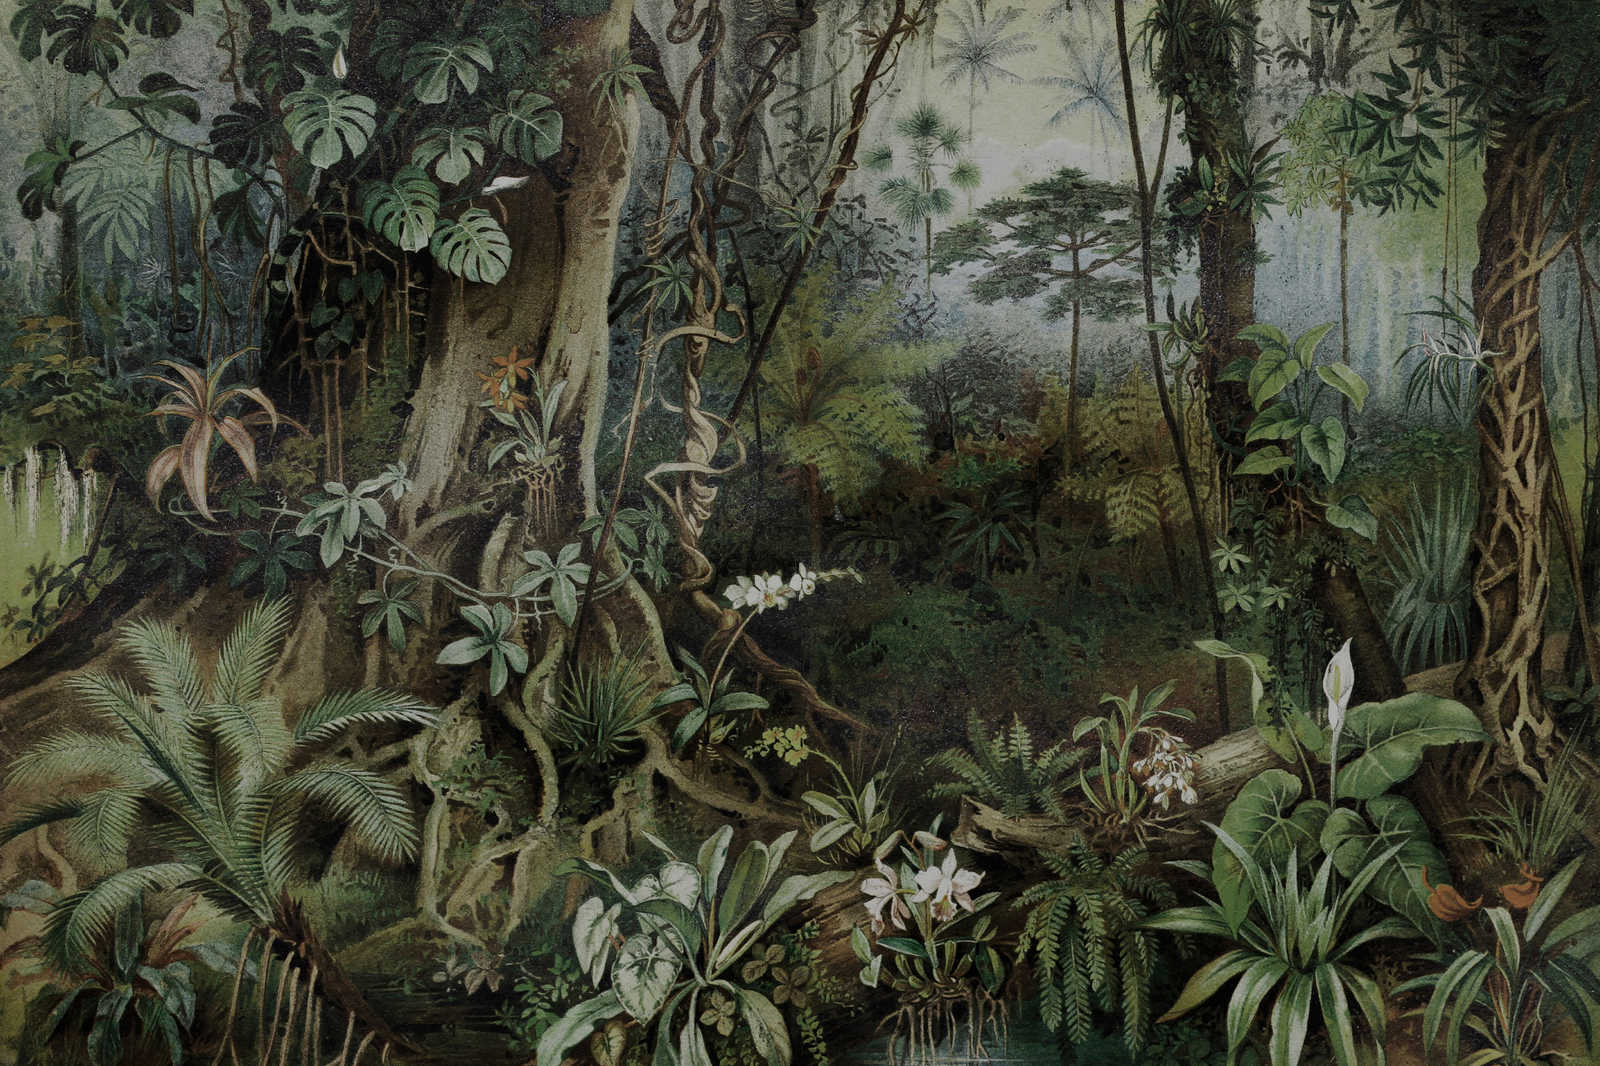             Quadro su tela Jungle in stile disegno | pareti di Patel - 0,90 m x 0,60 m
        